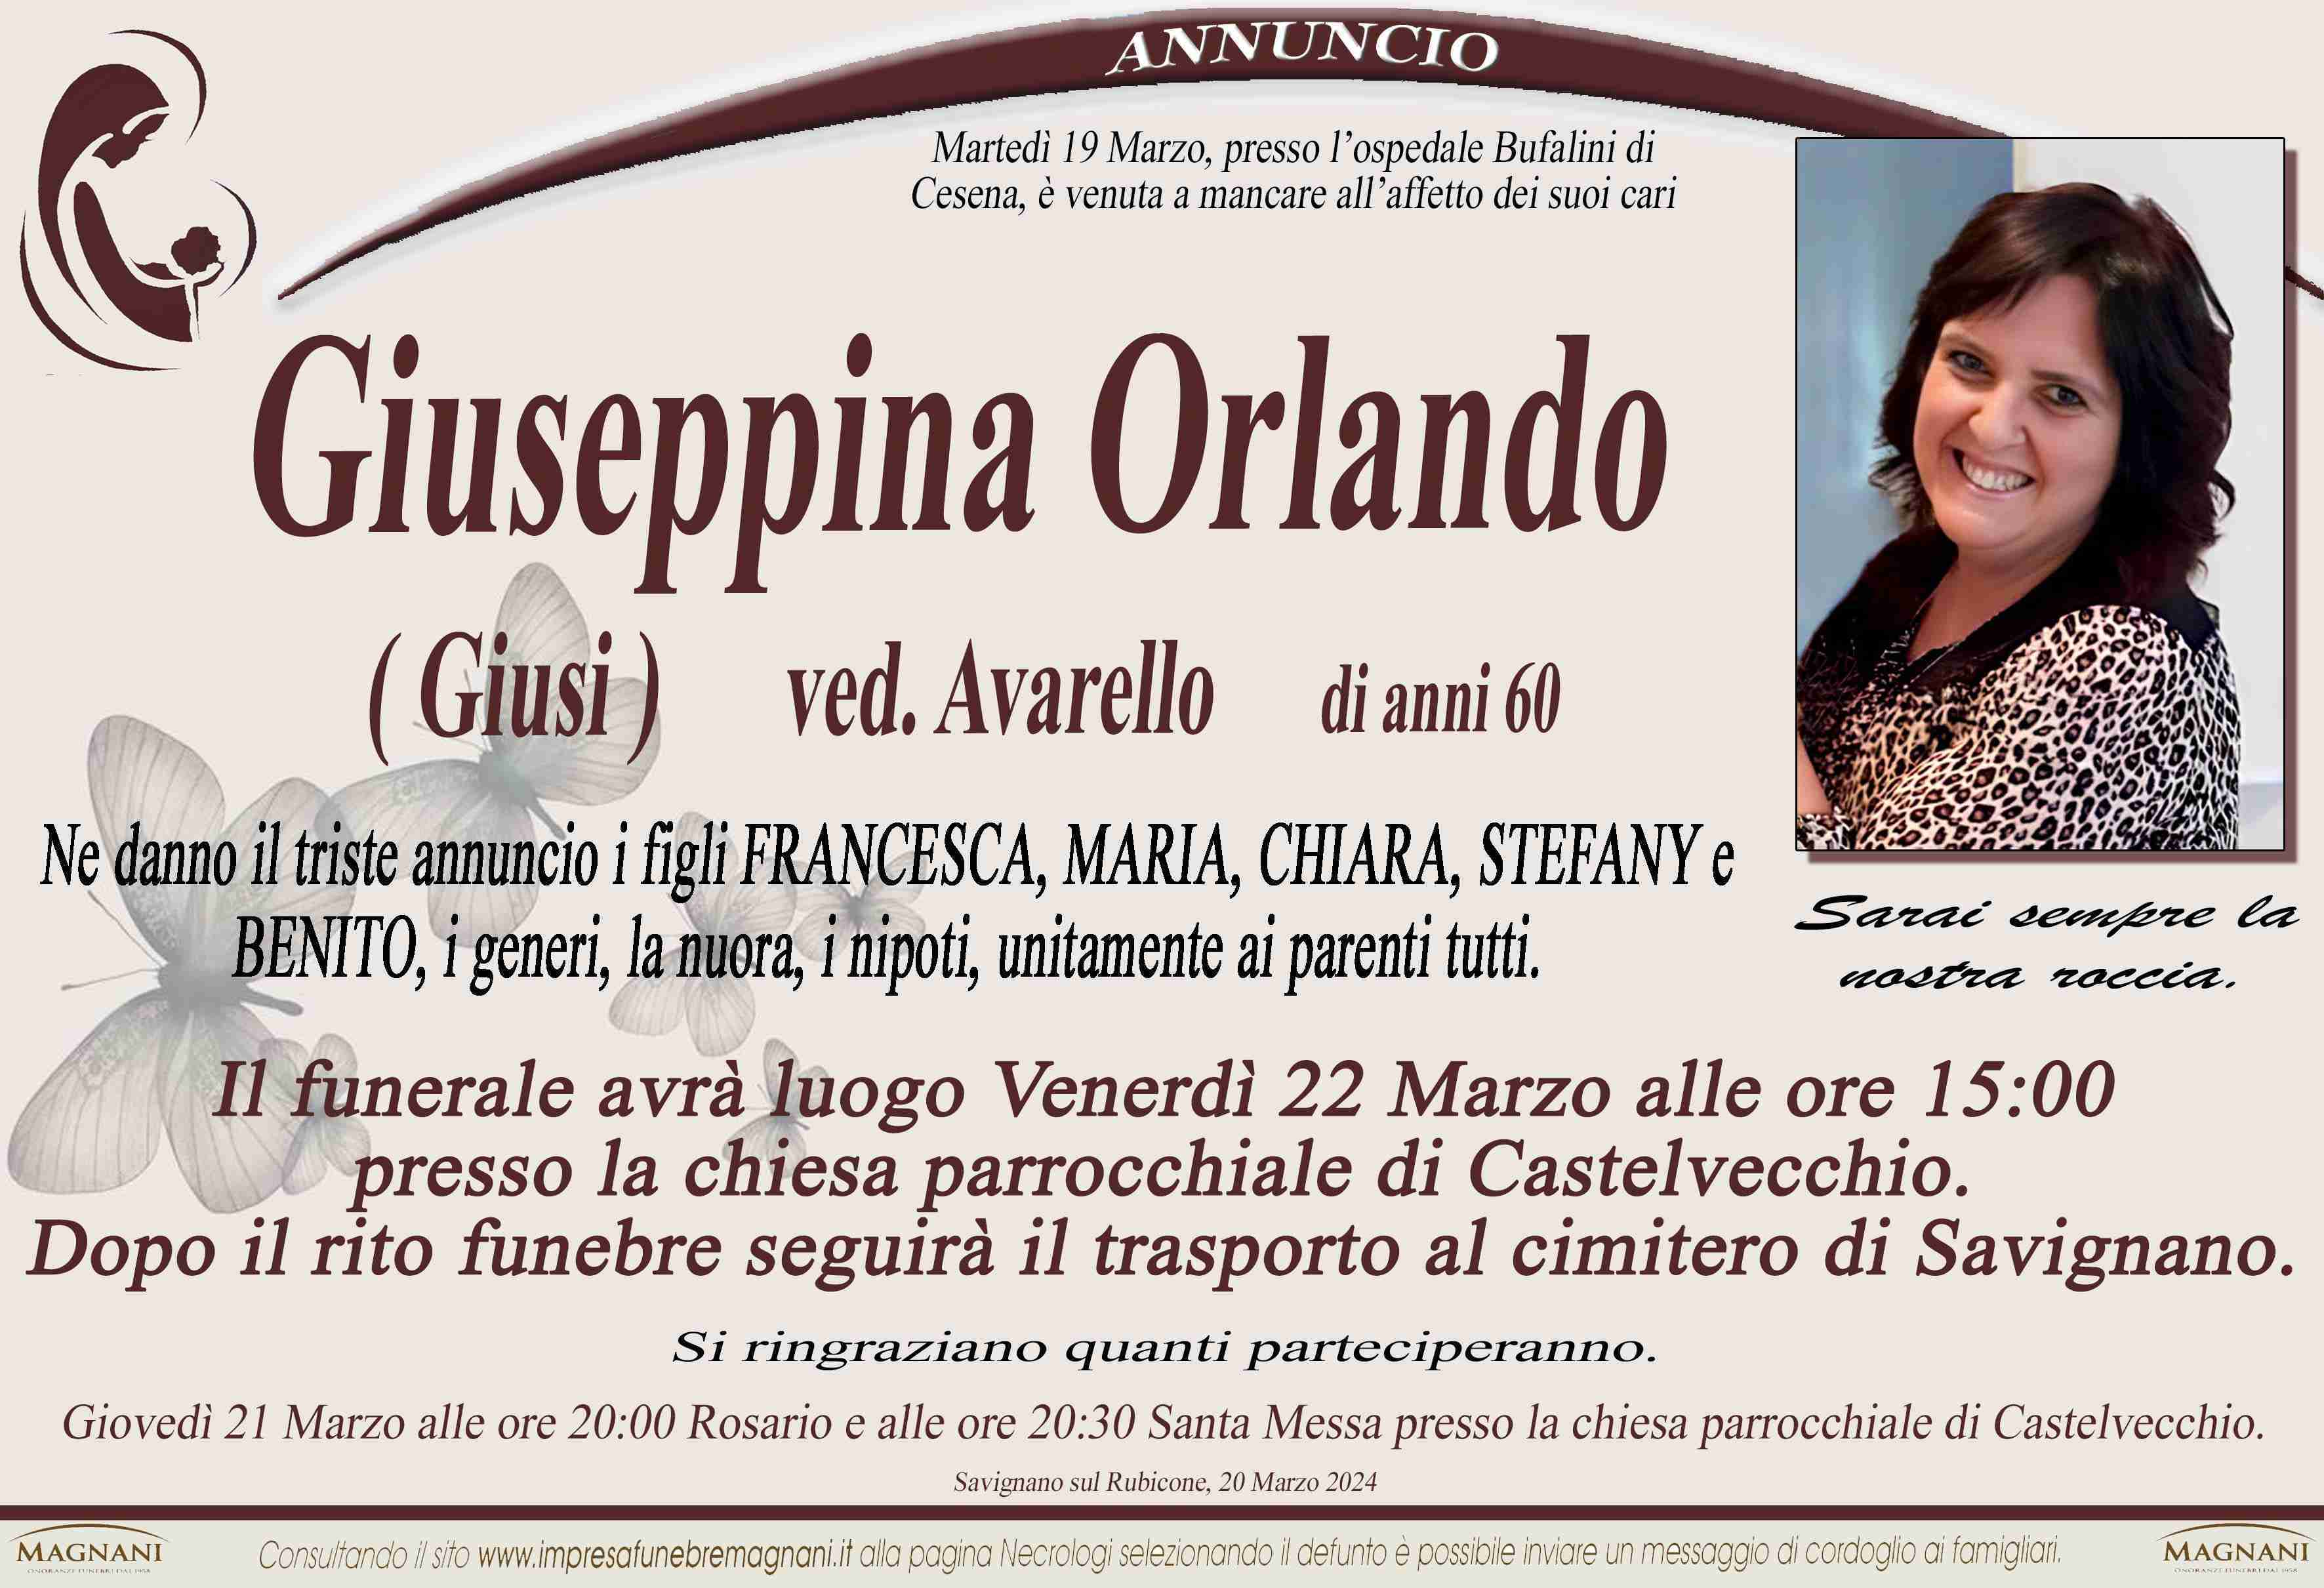 Giuseppina Orlando